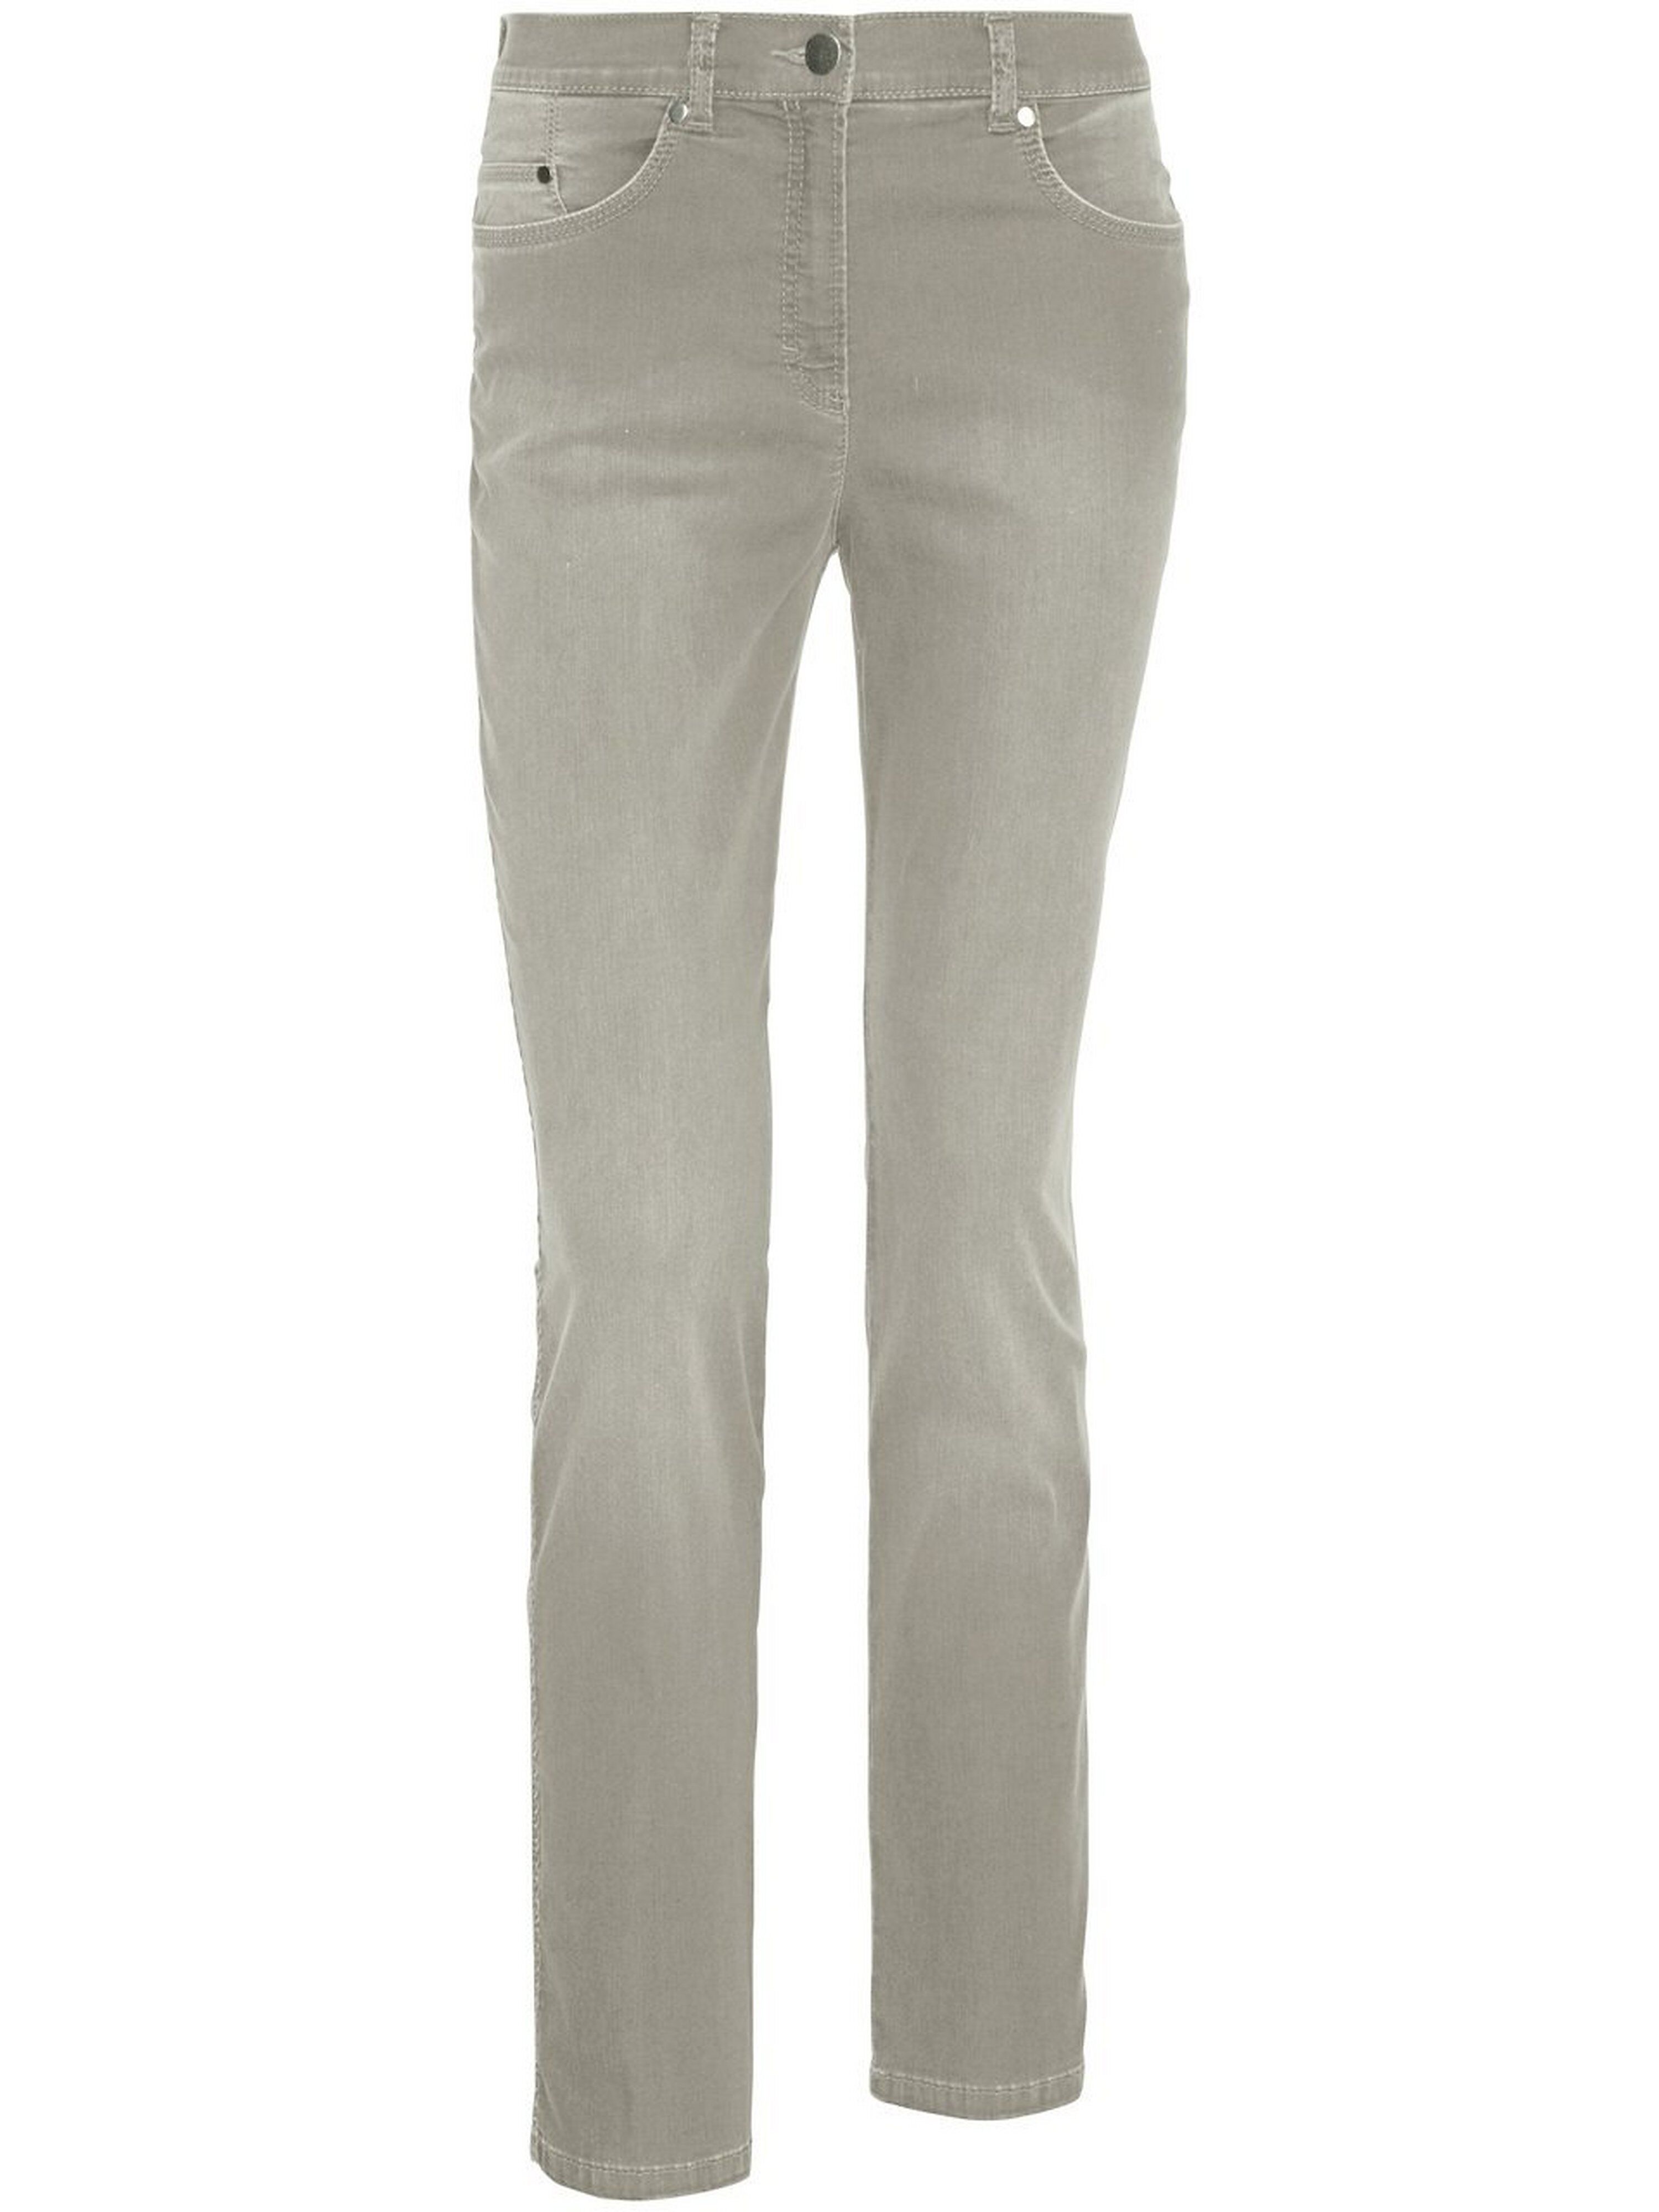 Brax Comfort Plus-jeans model Caren Fra Raphaela by Brax denim